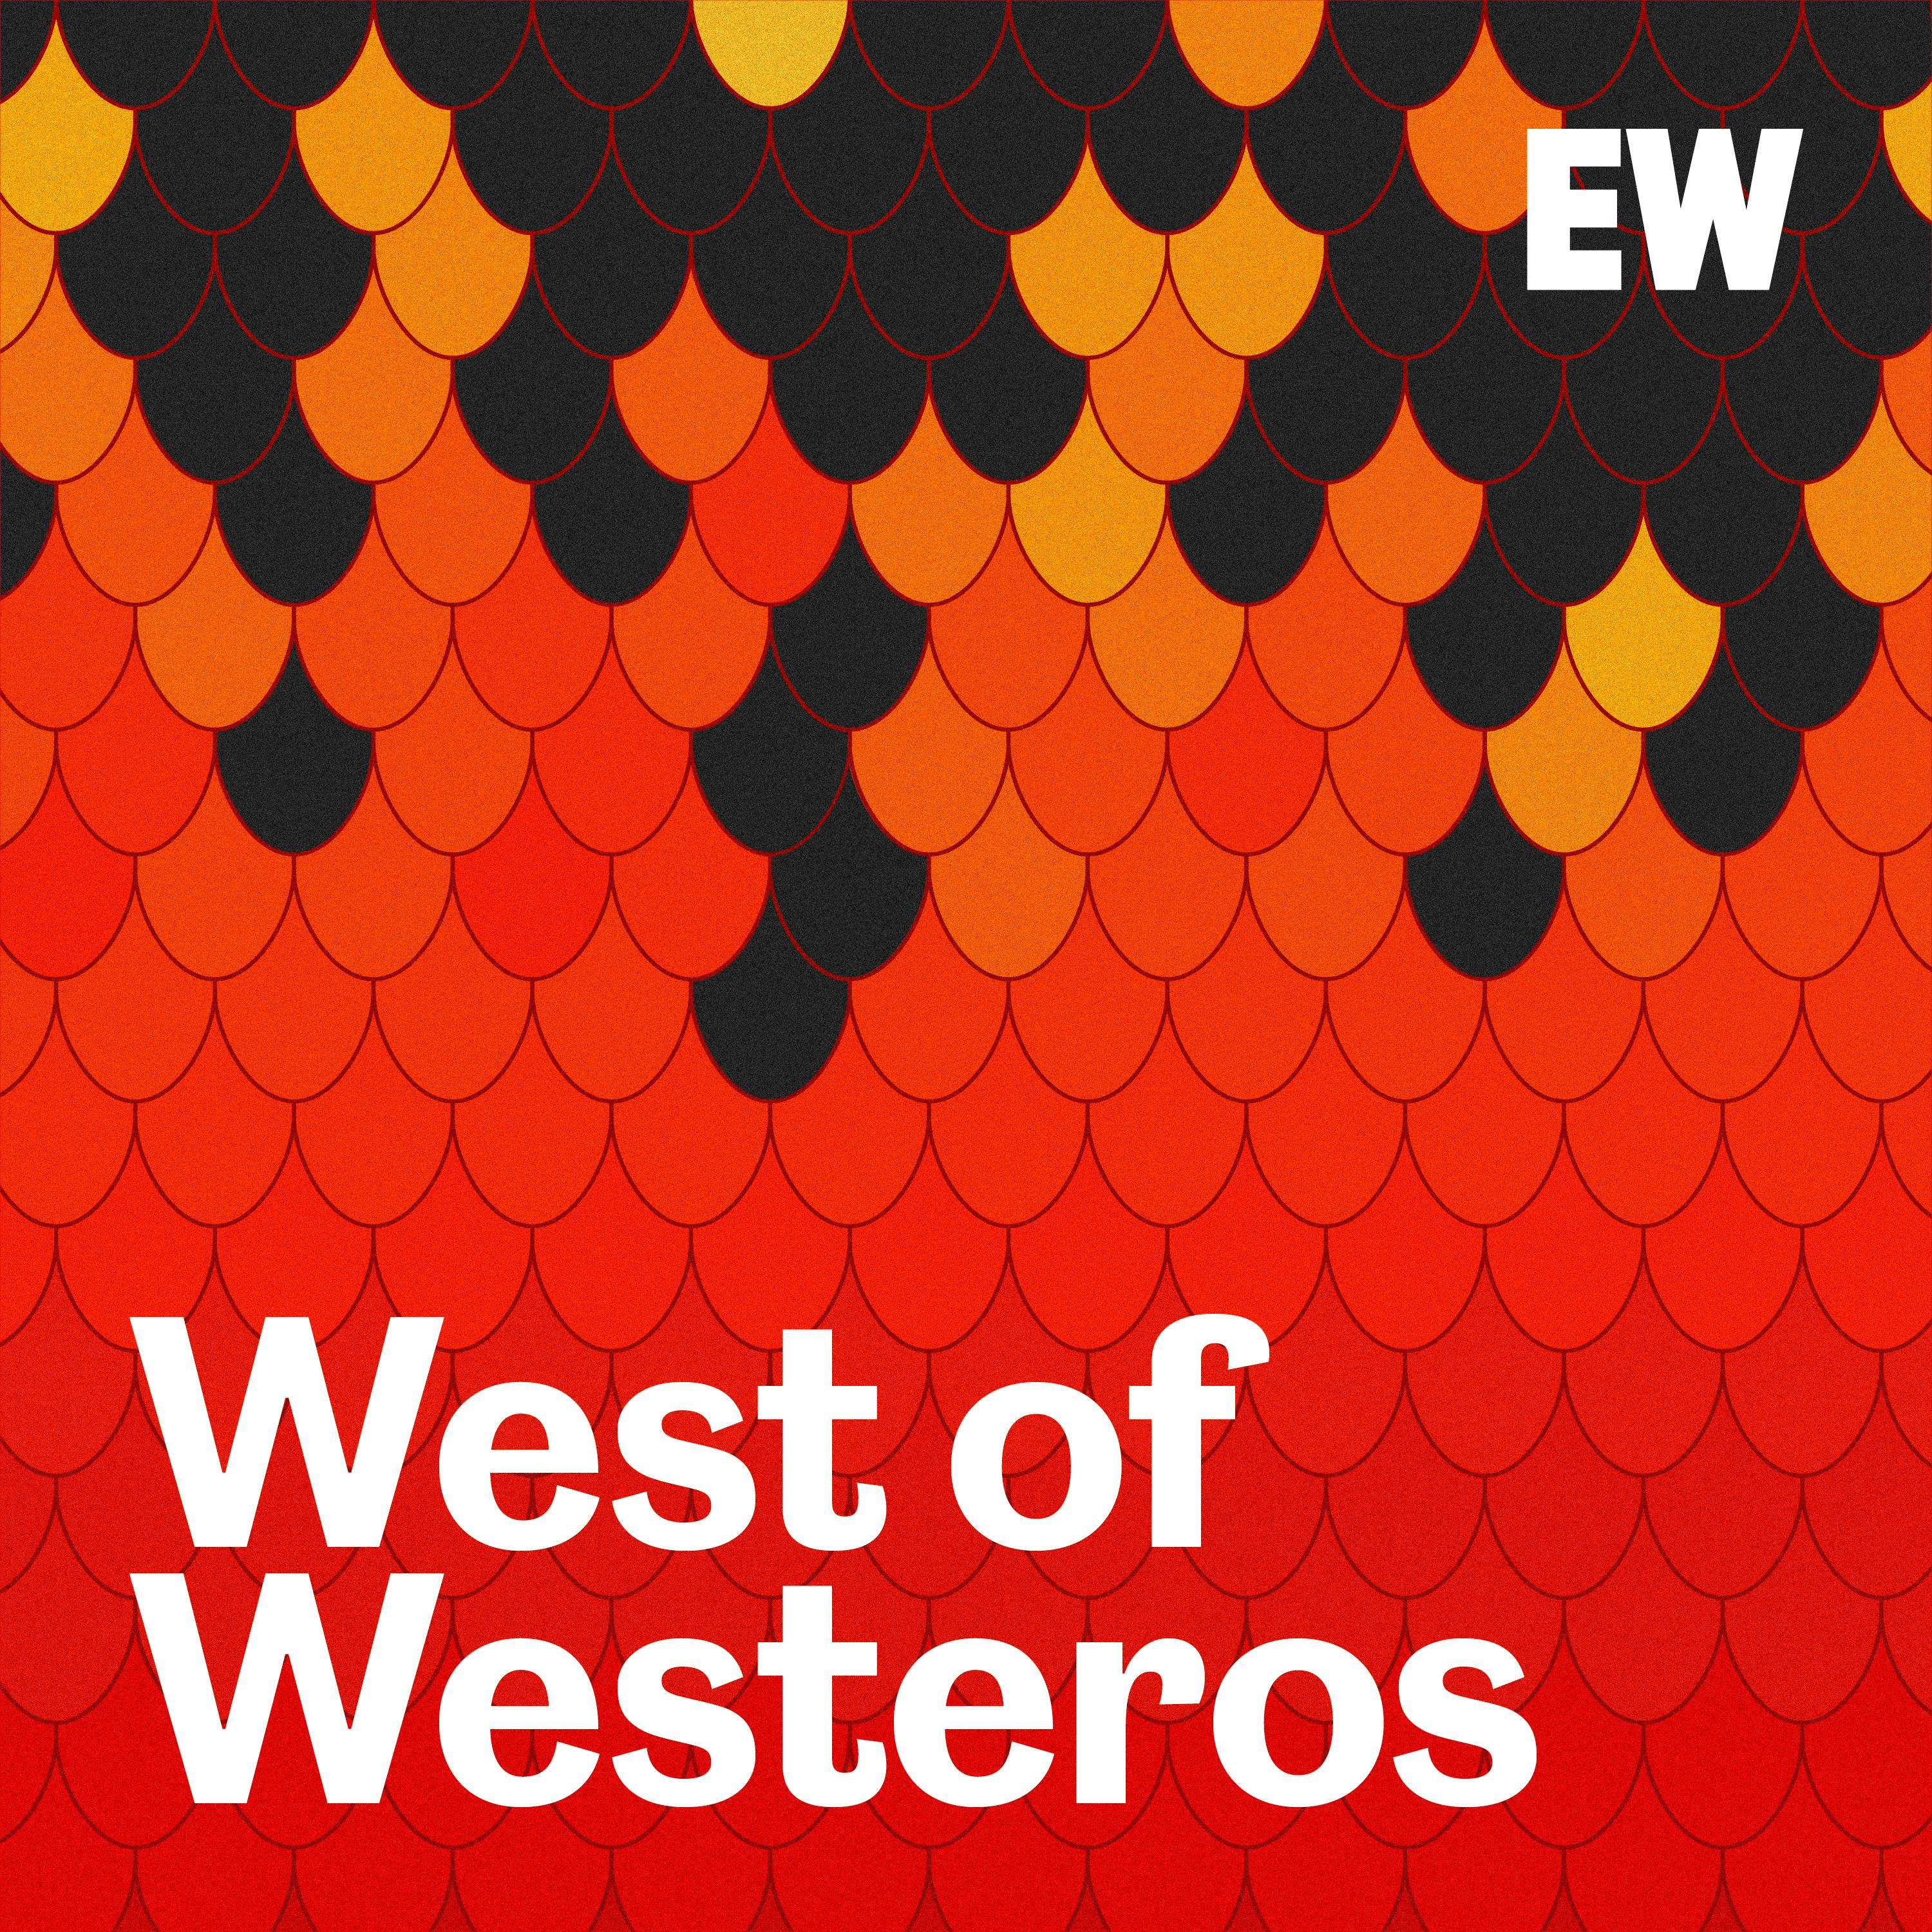 EW's West of Westeros